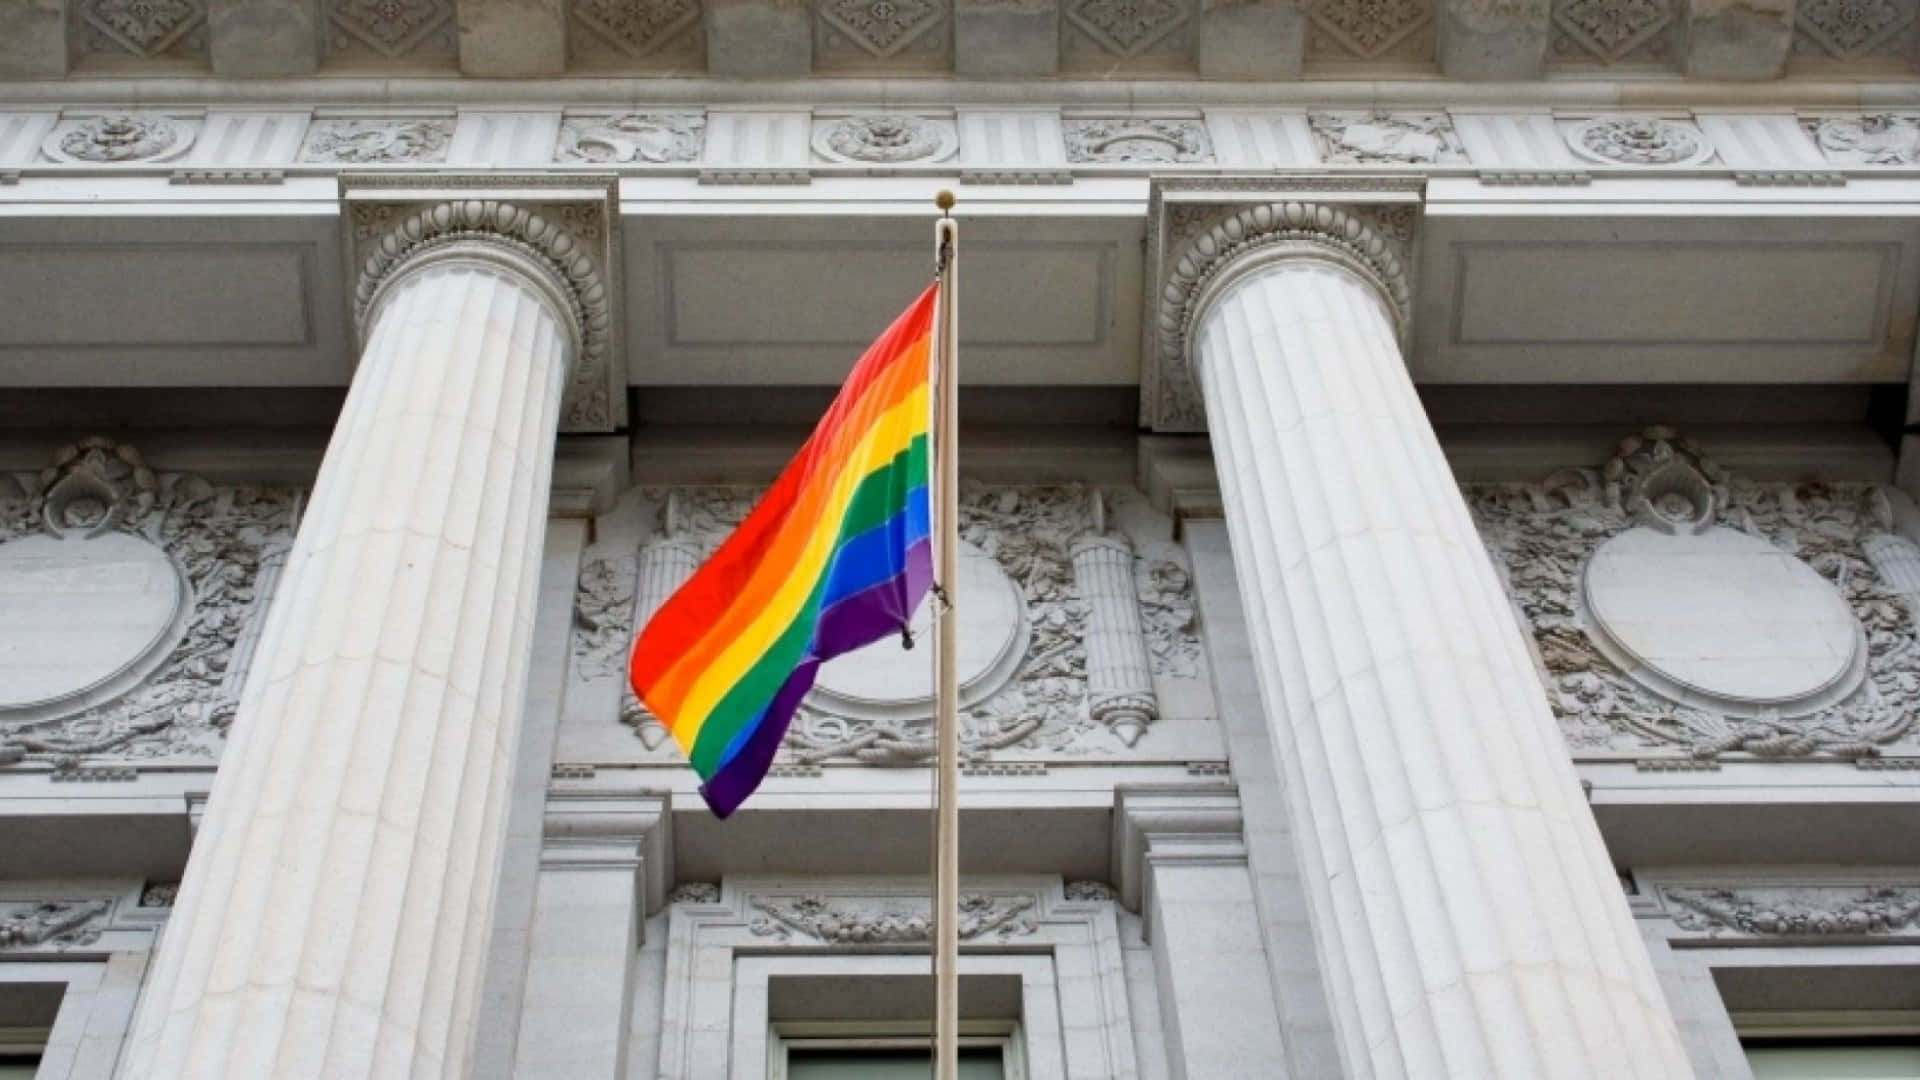 Papelde Parede Fofo Com A Bandeira Arco-íris Lgbt Da Prefeitura De São Francisco. Papel de Parede